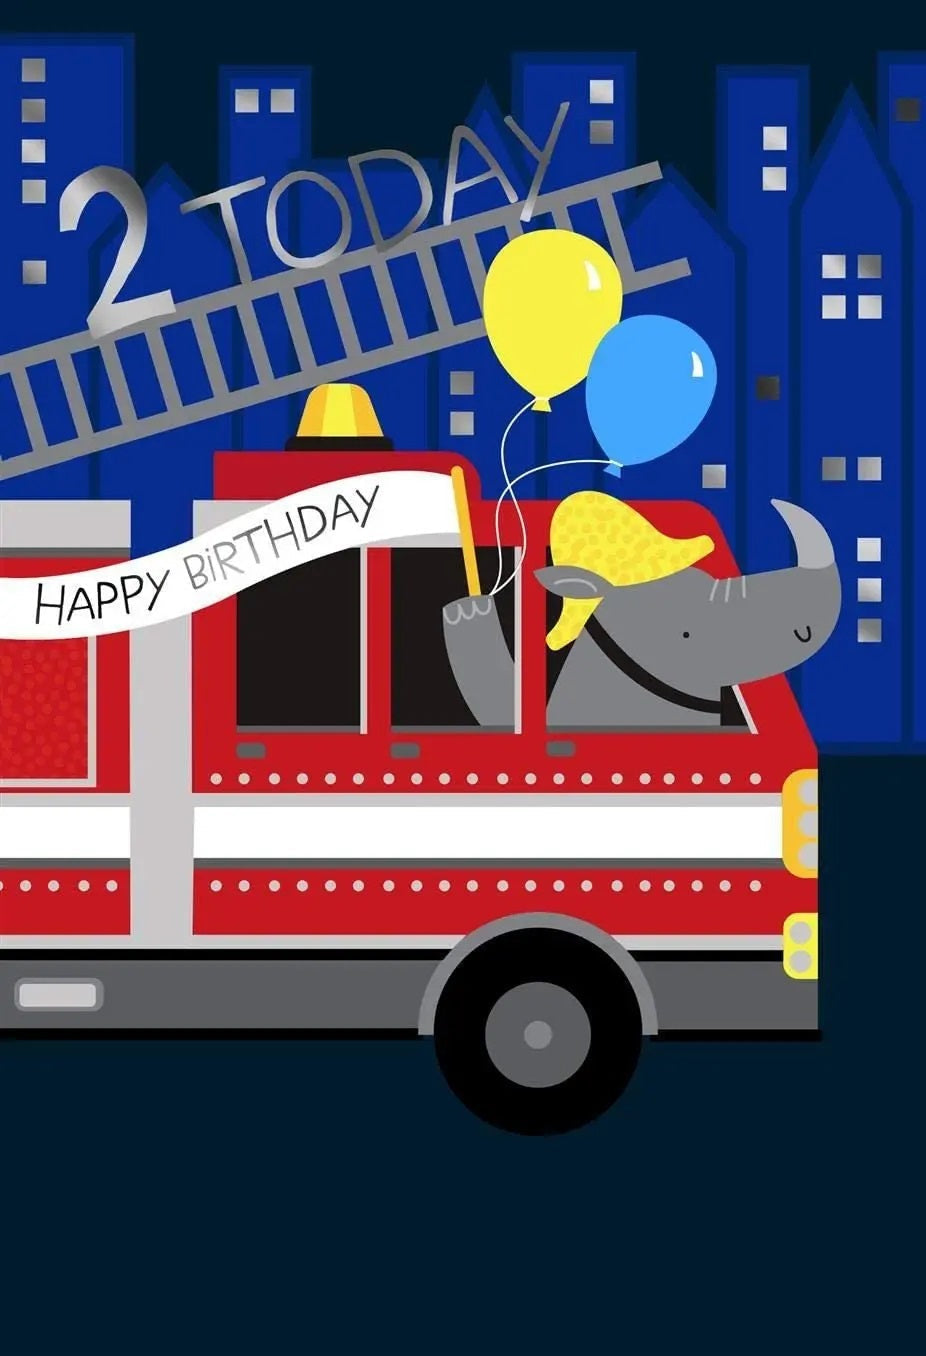 2nd Birthday Card - A Rhinosauros Fire Engine